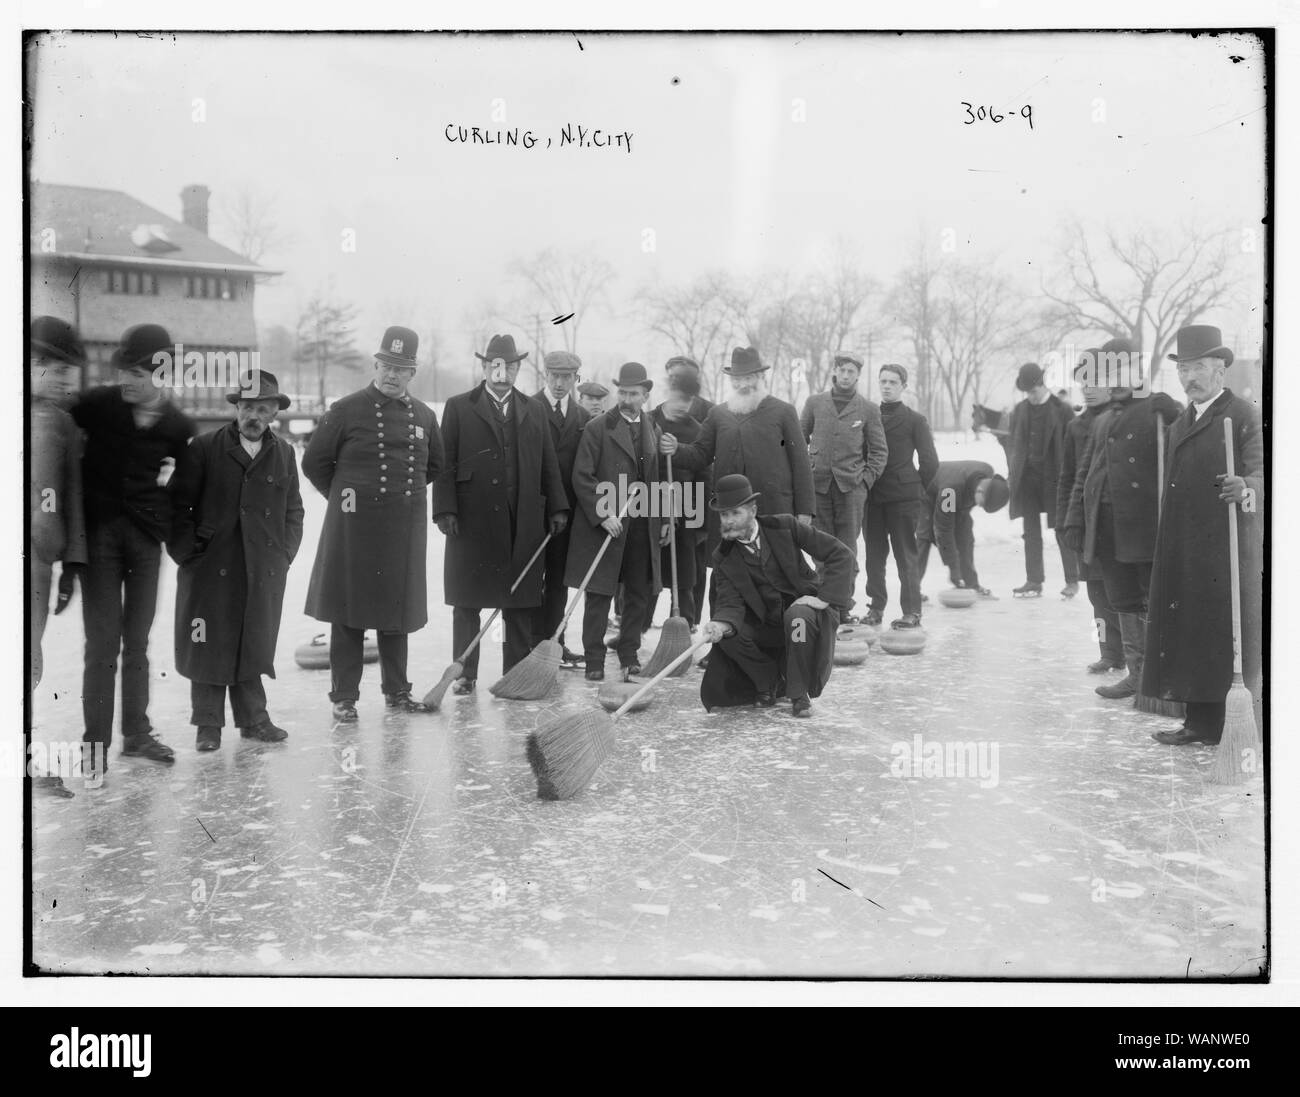 Curling-N.Y.C. Stock Photo